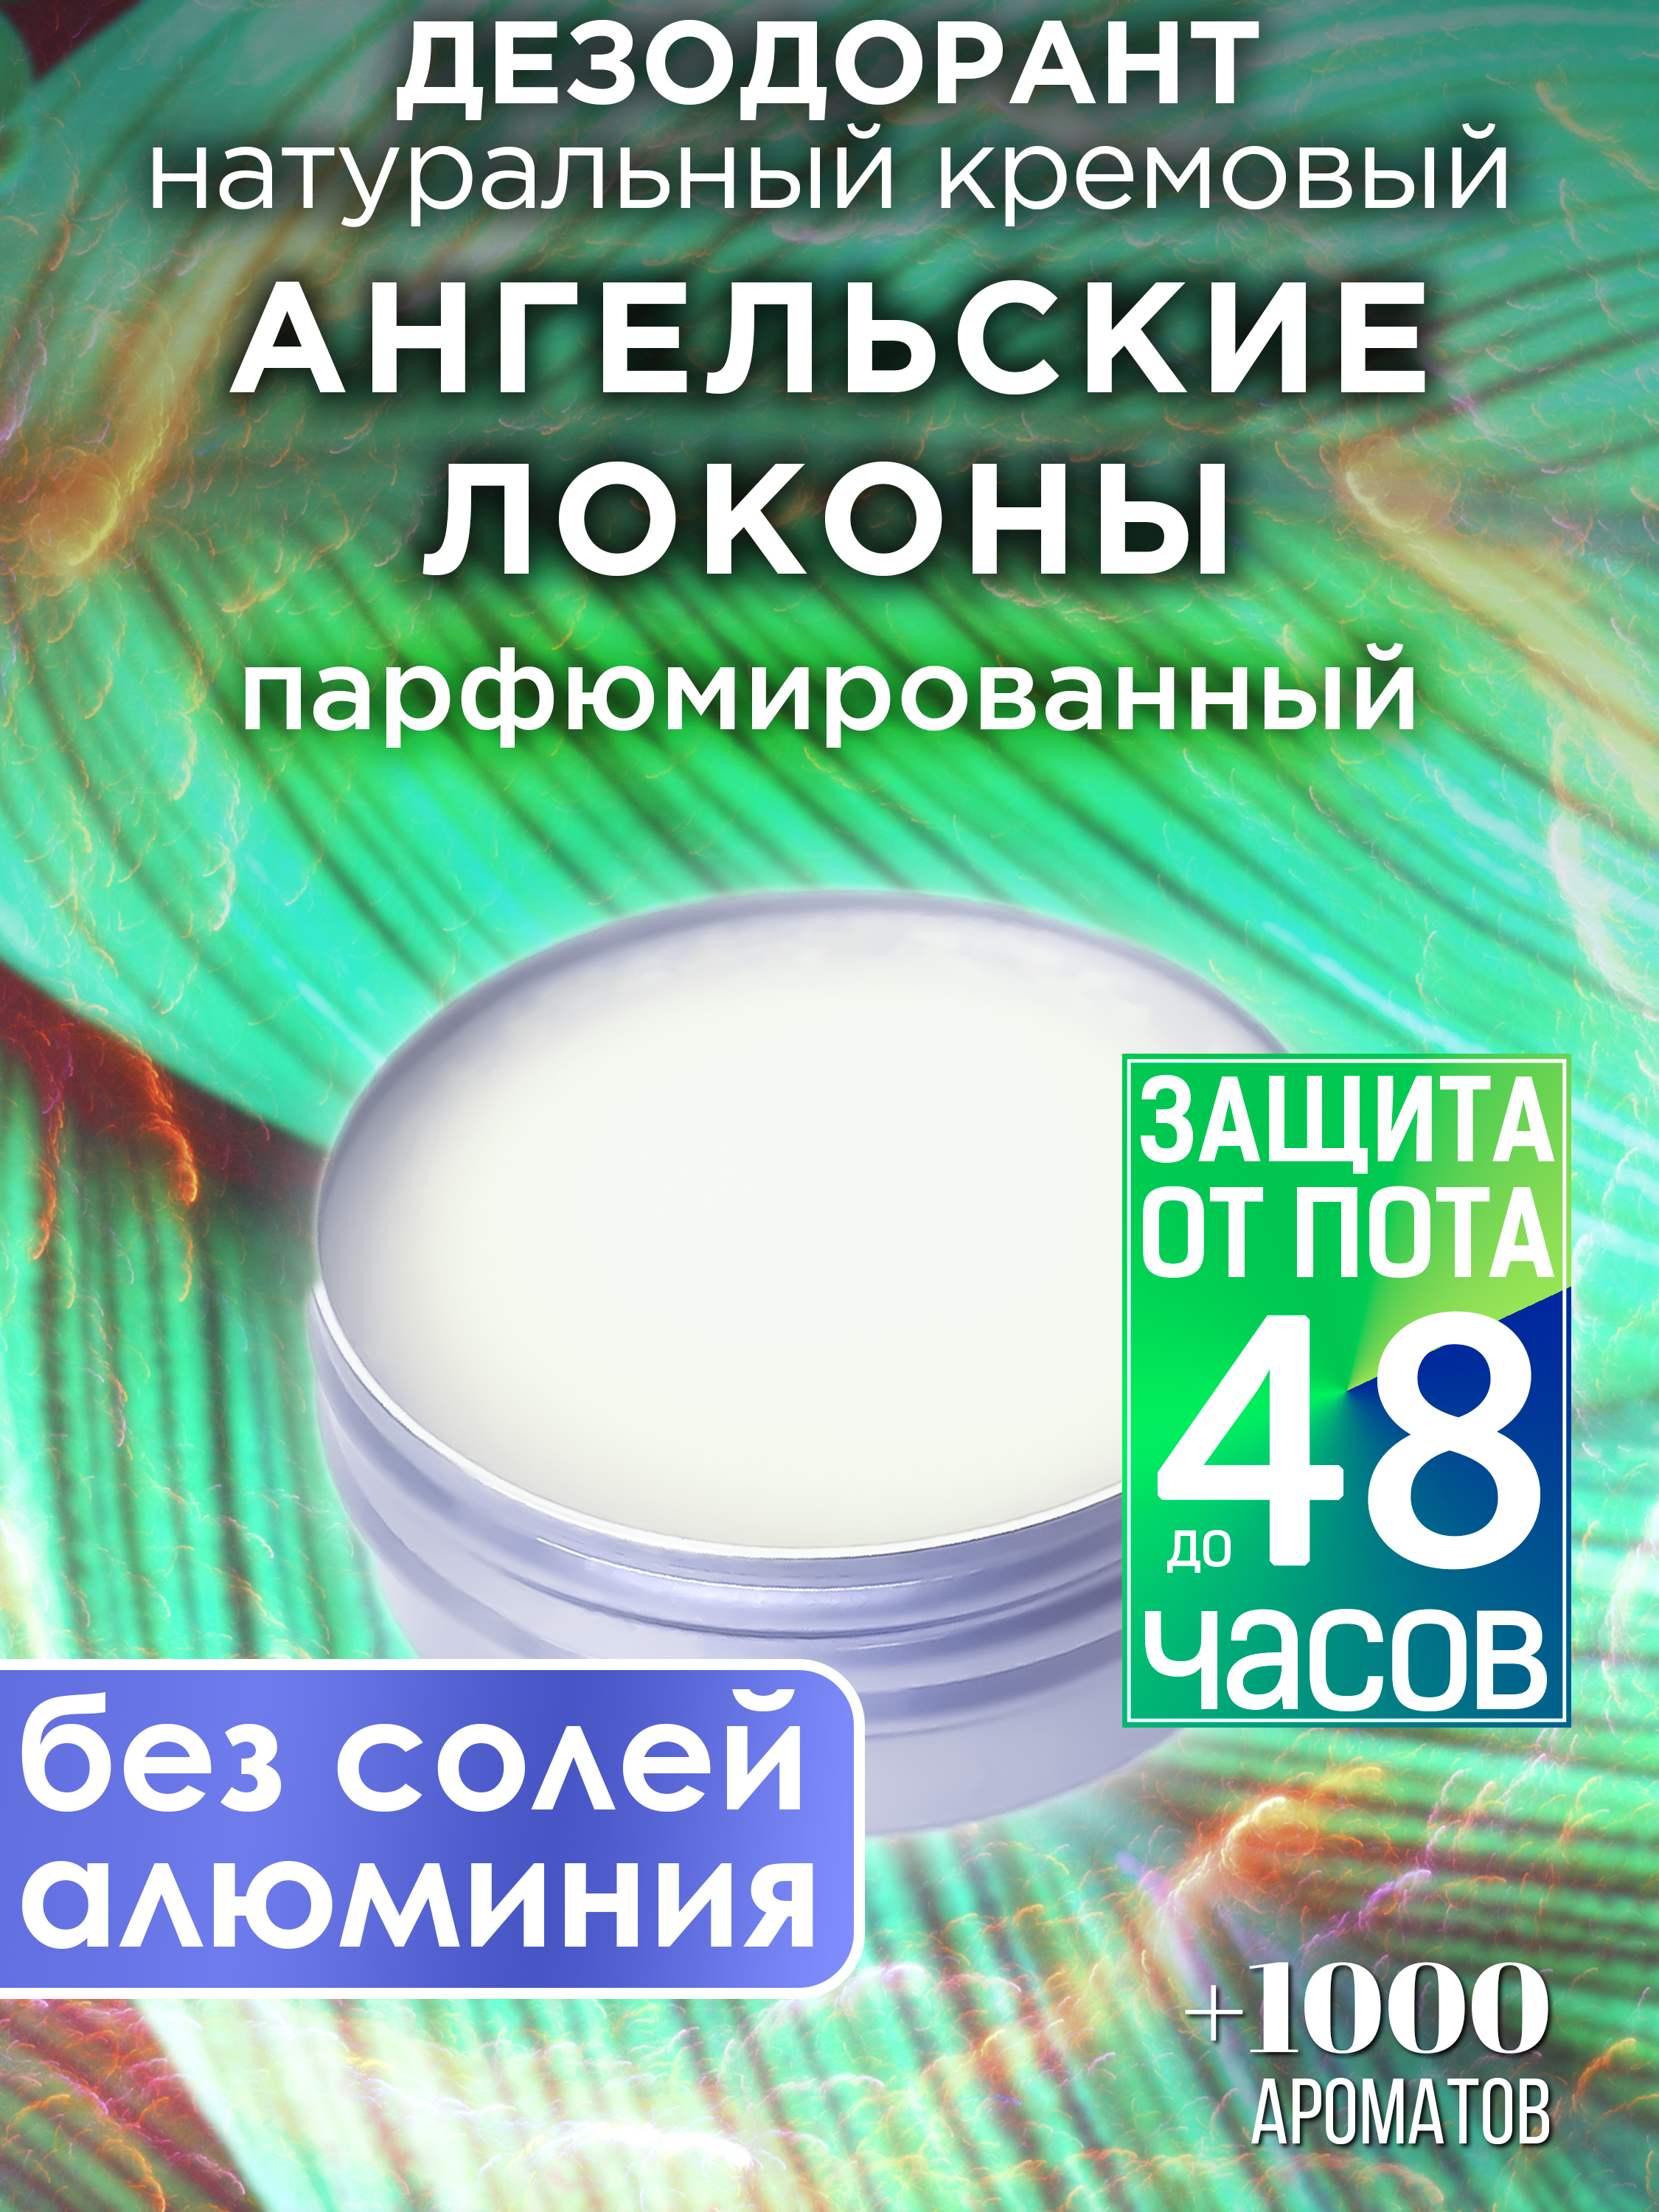 Натуральный кремовый дезодорант Аурасо Ангельские локоны парфюмированный унисекс